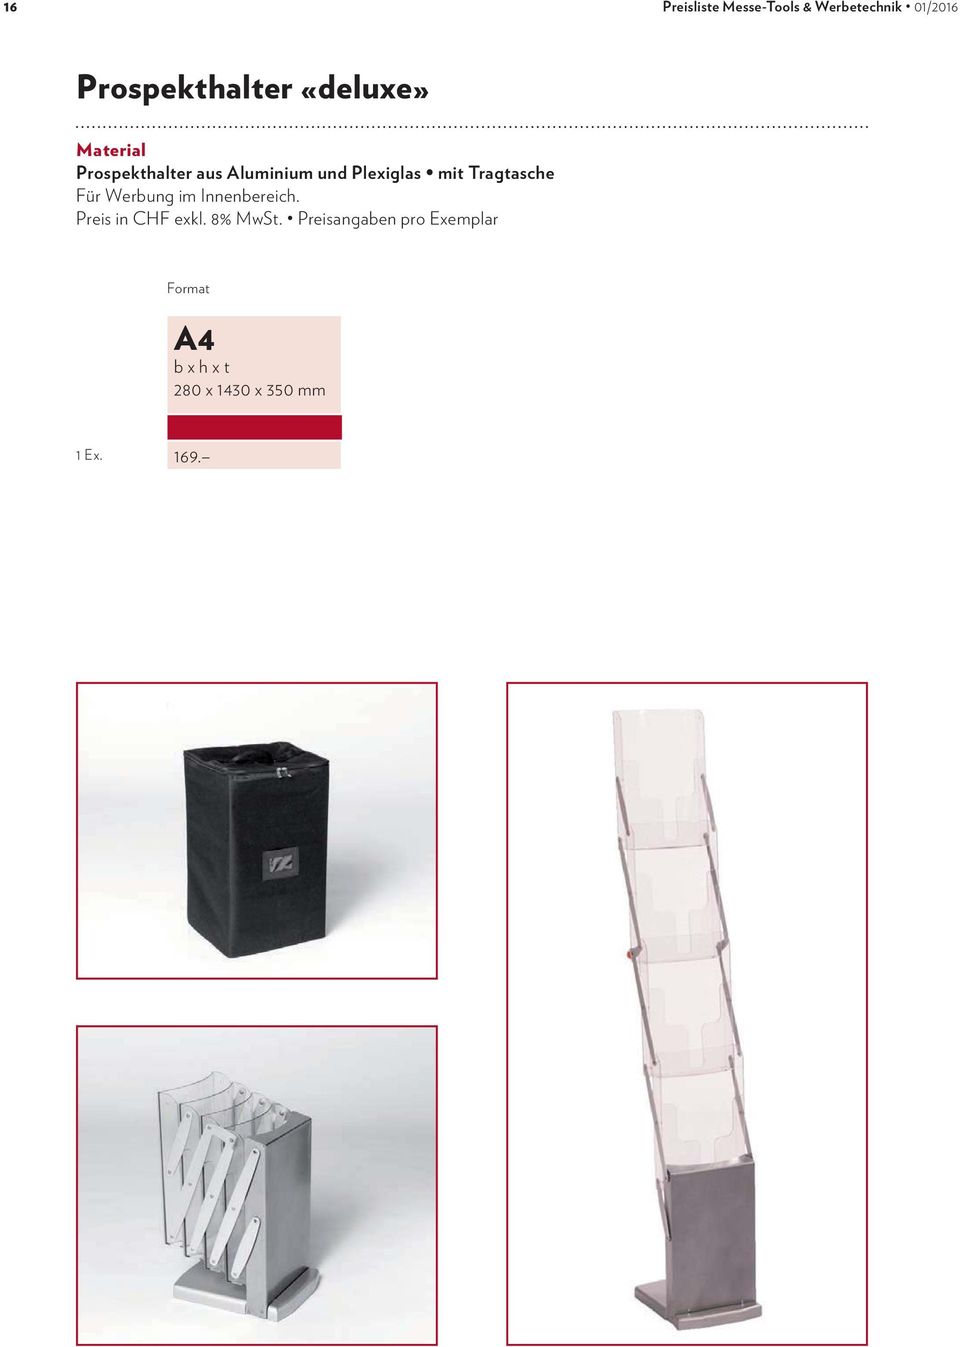 Aluminium und Plexiglas mit Tragtasche Für Werbung